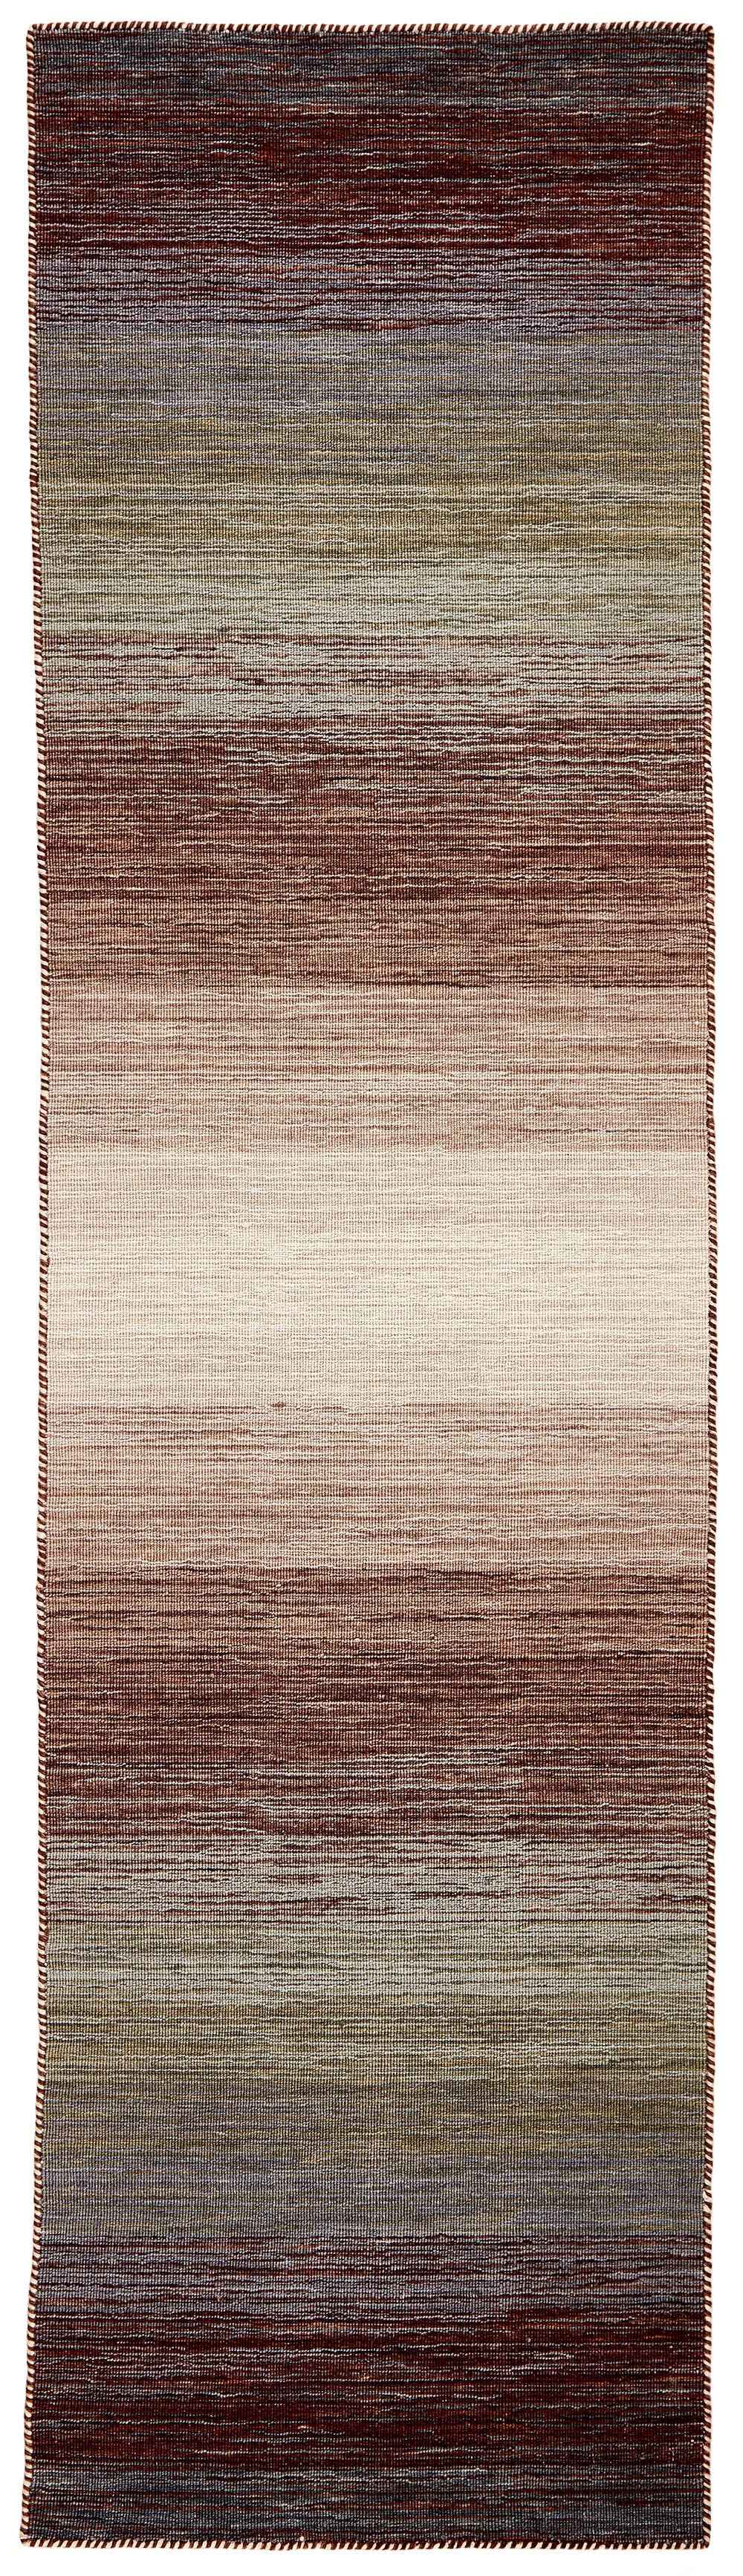 300x80 cm  Indian Wool Multicolor Rug-HLD180805, Black Terra